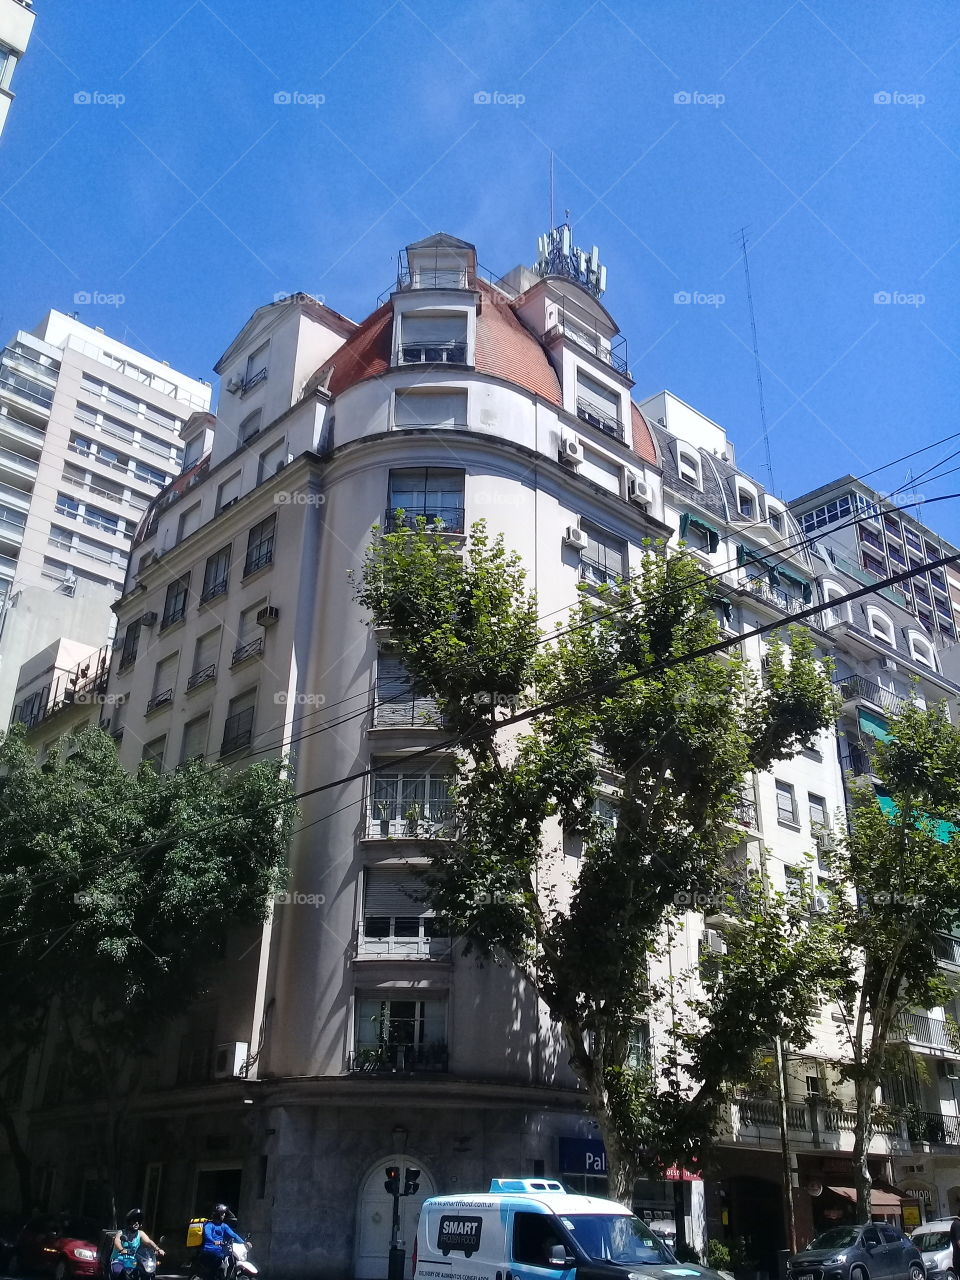 imagen de un antiguo edificio de departamentos situado en una vereda con árboles,en una esquina en diagonal sobre dos avenidas urbanas. Ciudad de Buenos Aires.